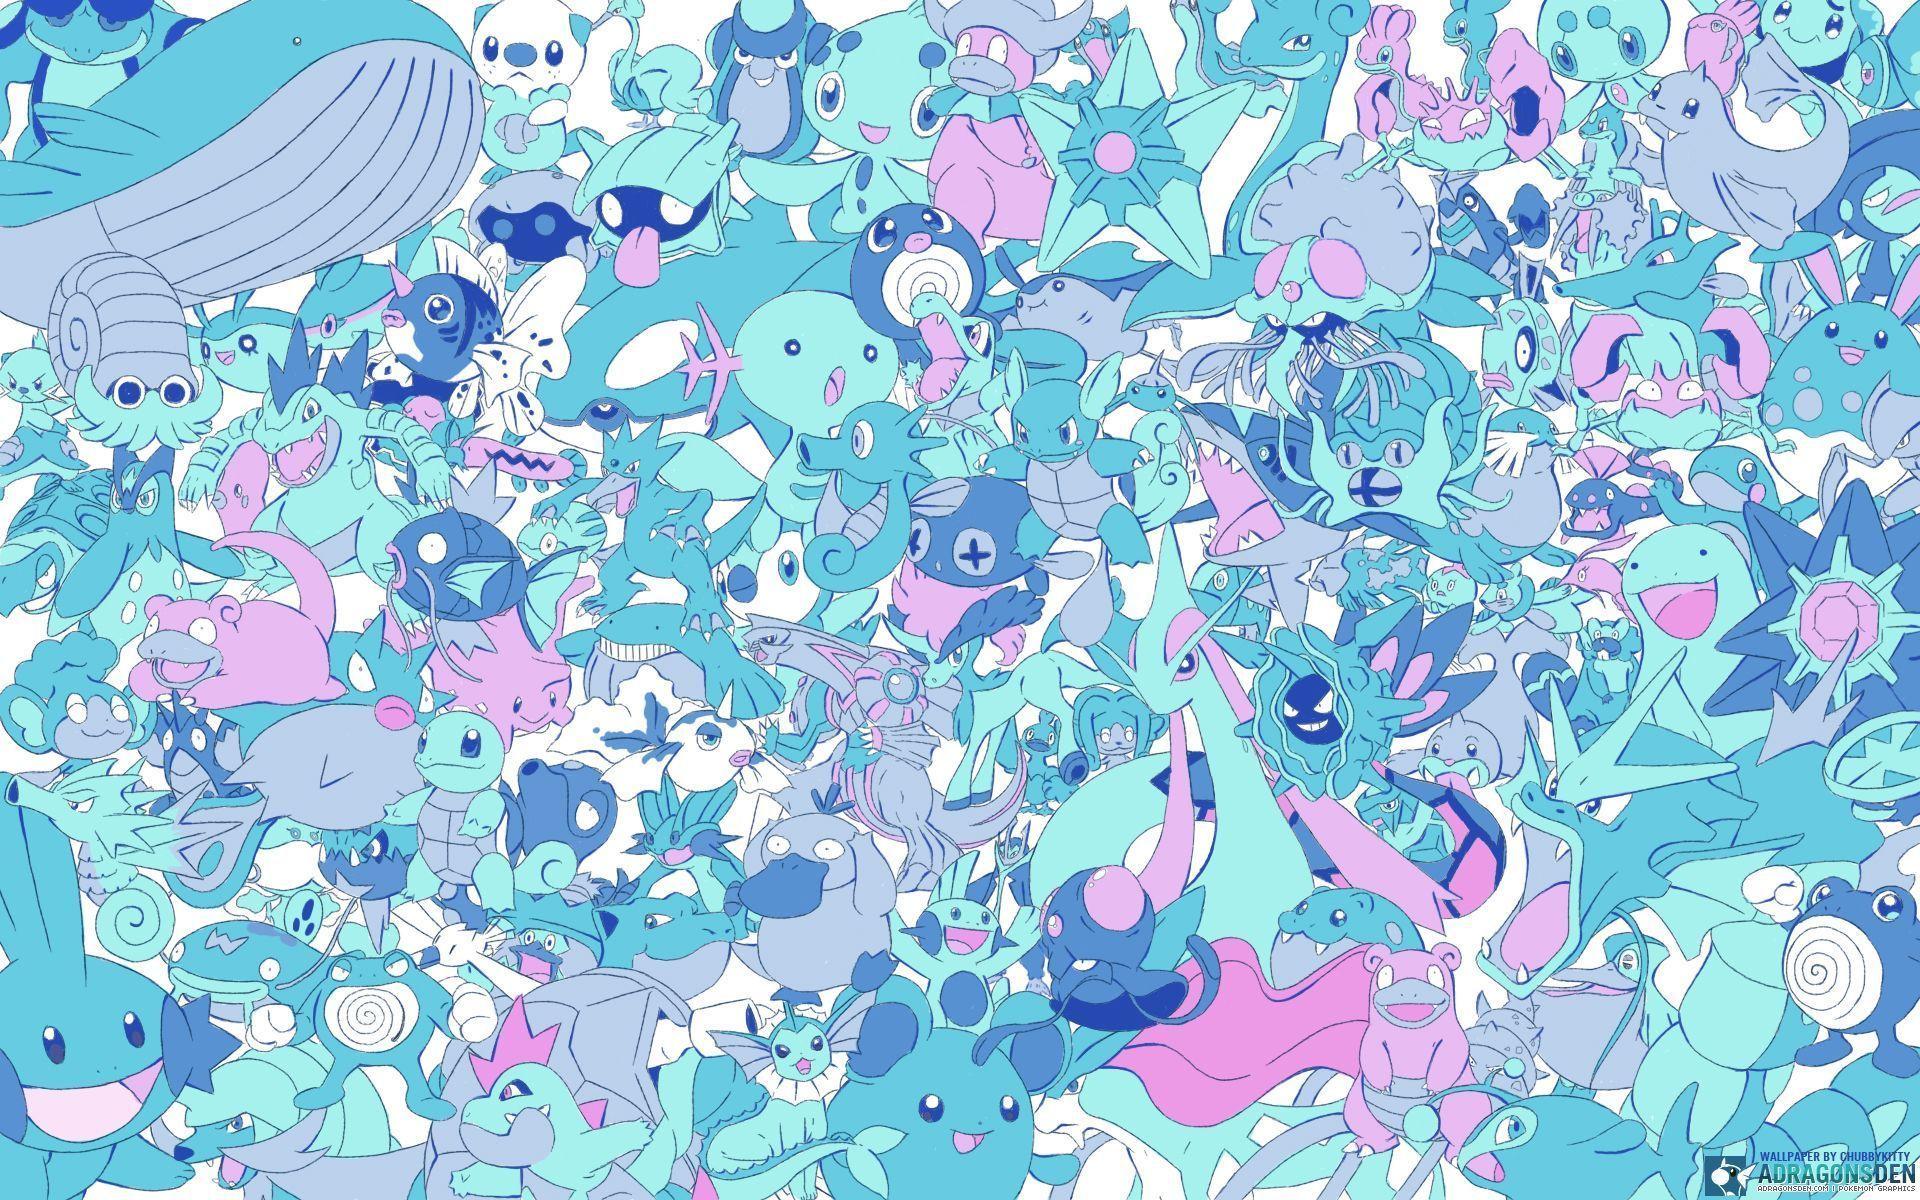 Dragon Type Pokemon Wallpaper